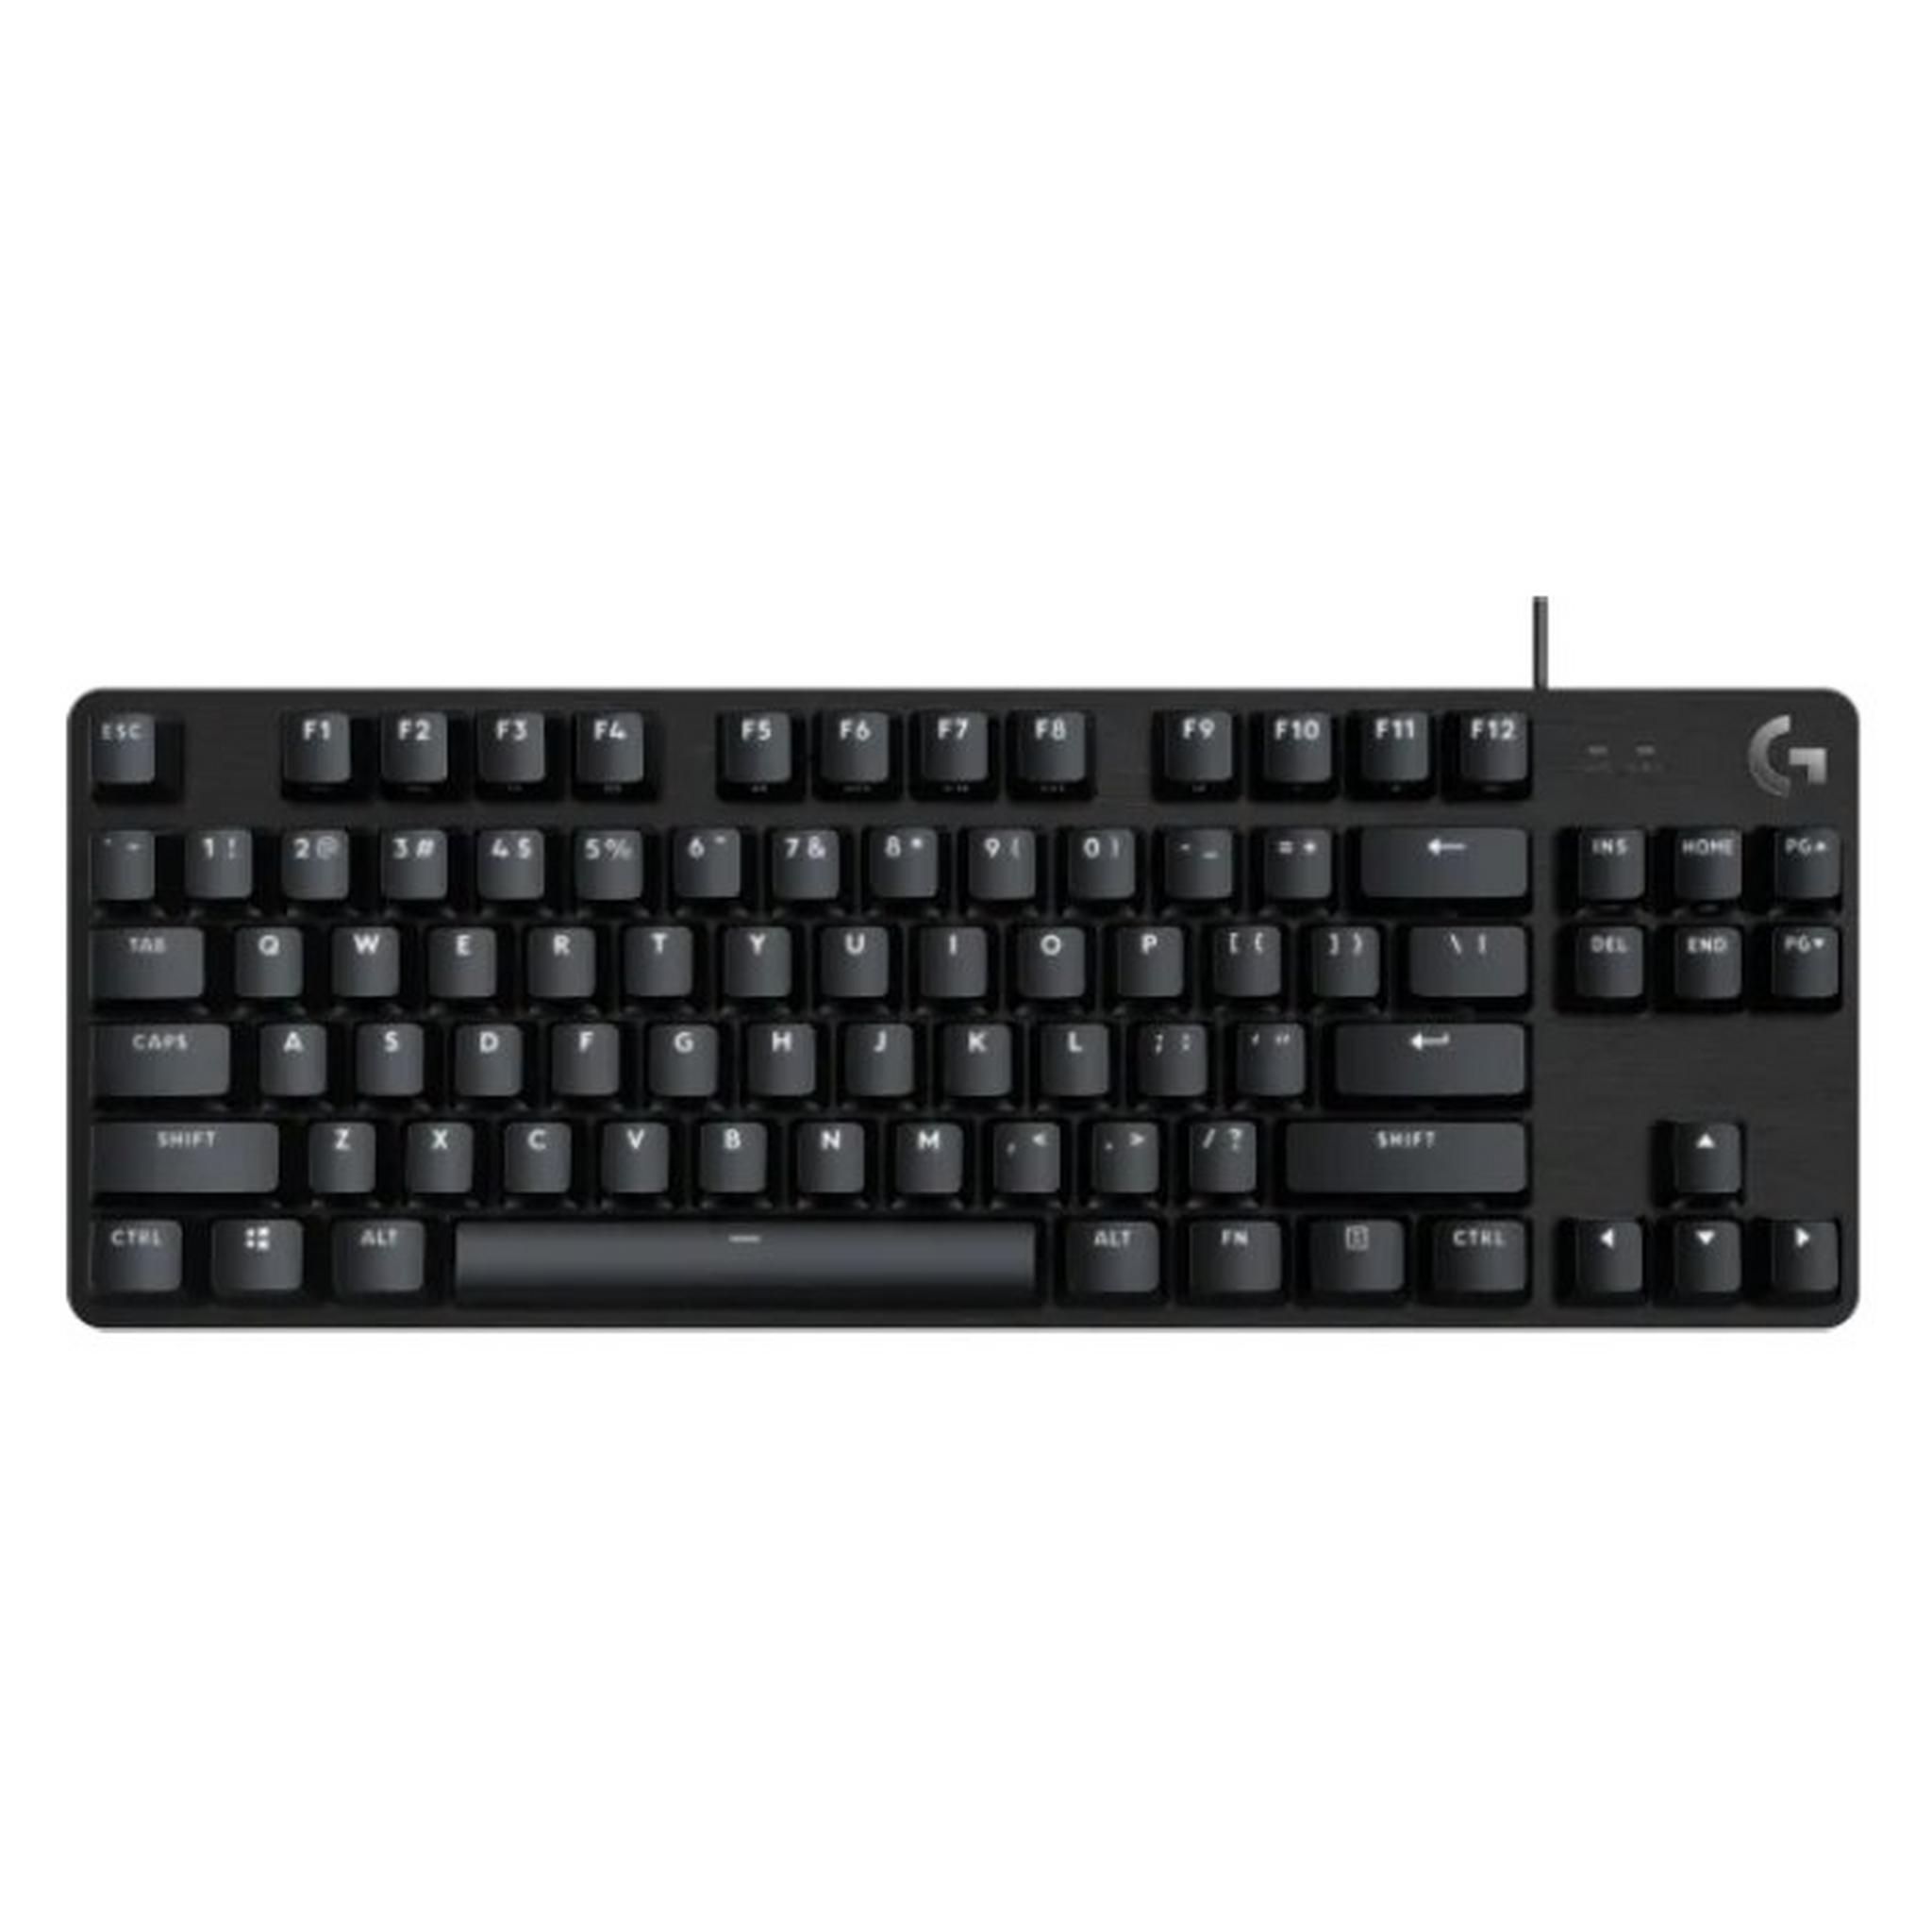 Logitech G413 TKL SE Tactile Switch Gaming Keyboard - Black